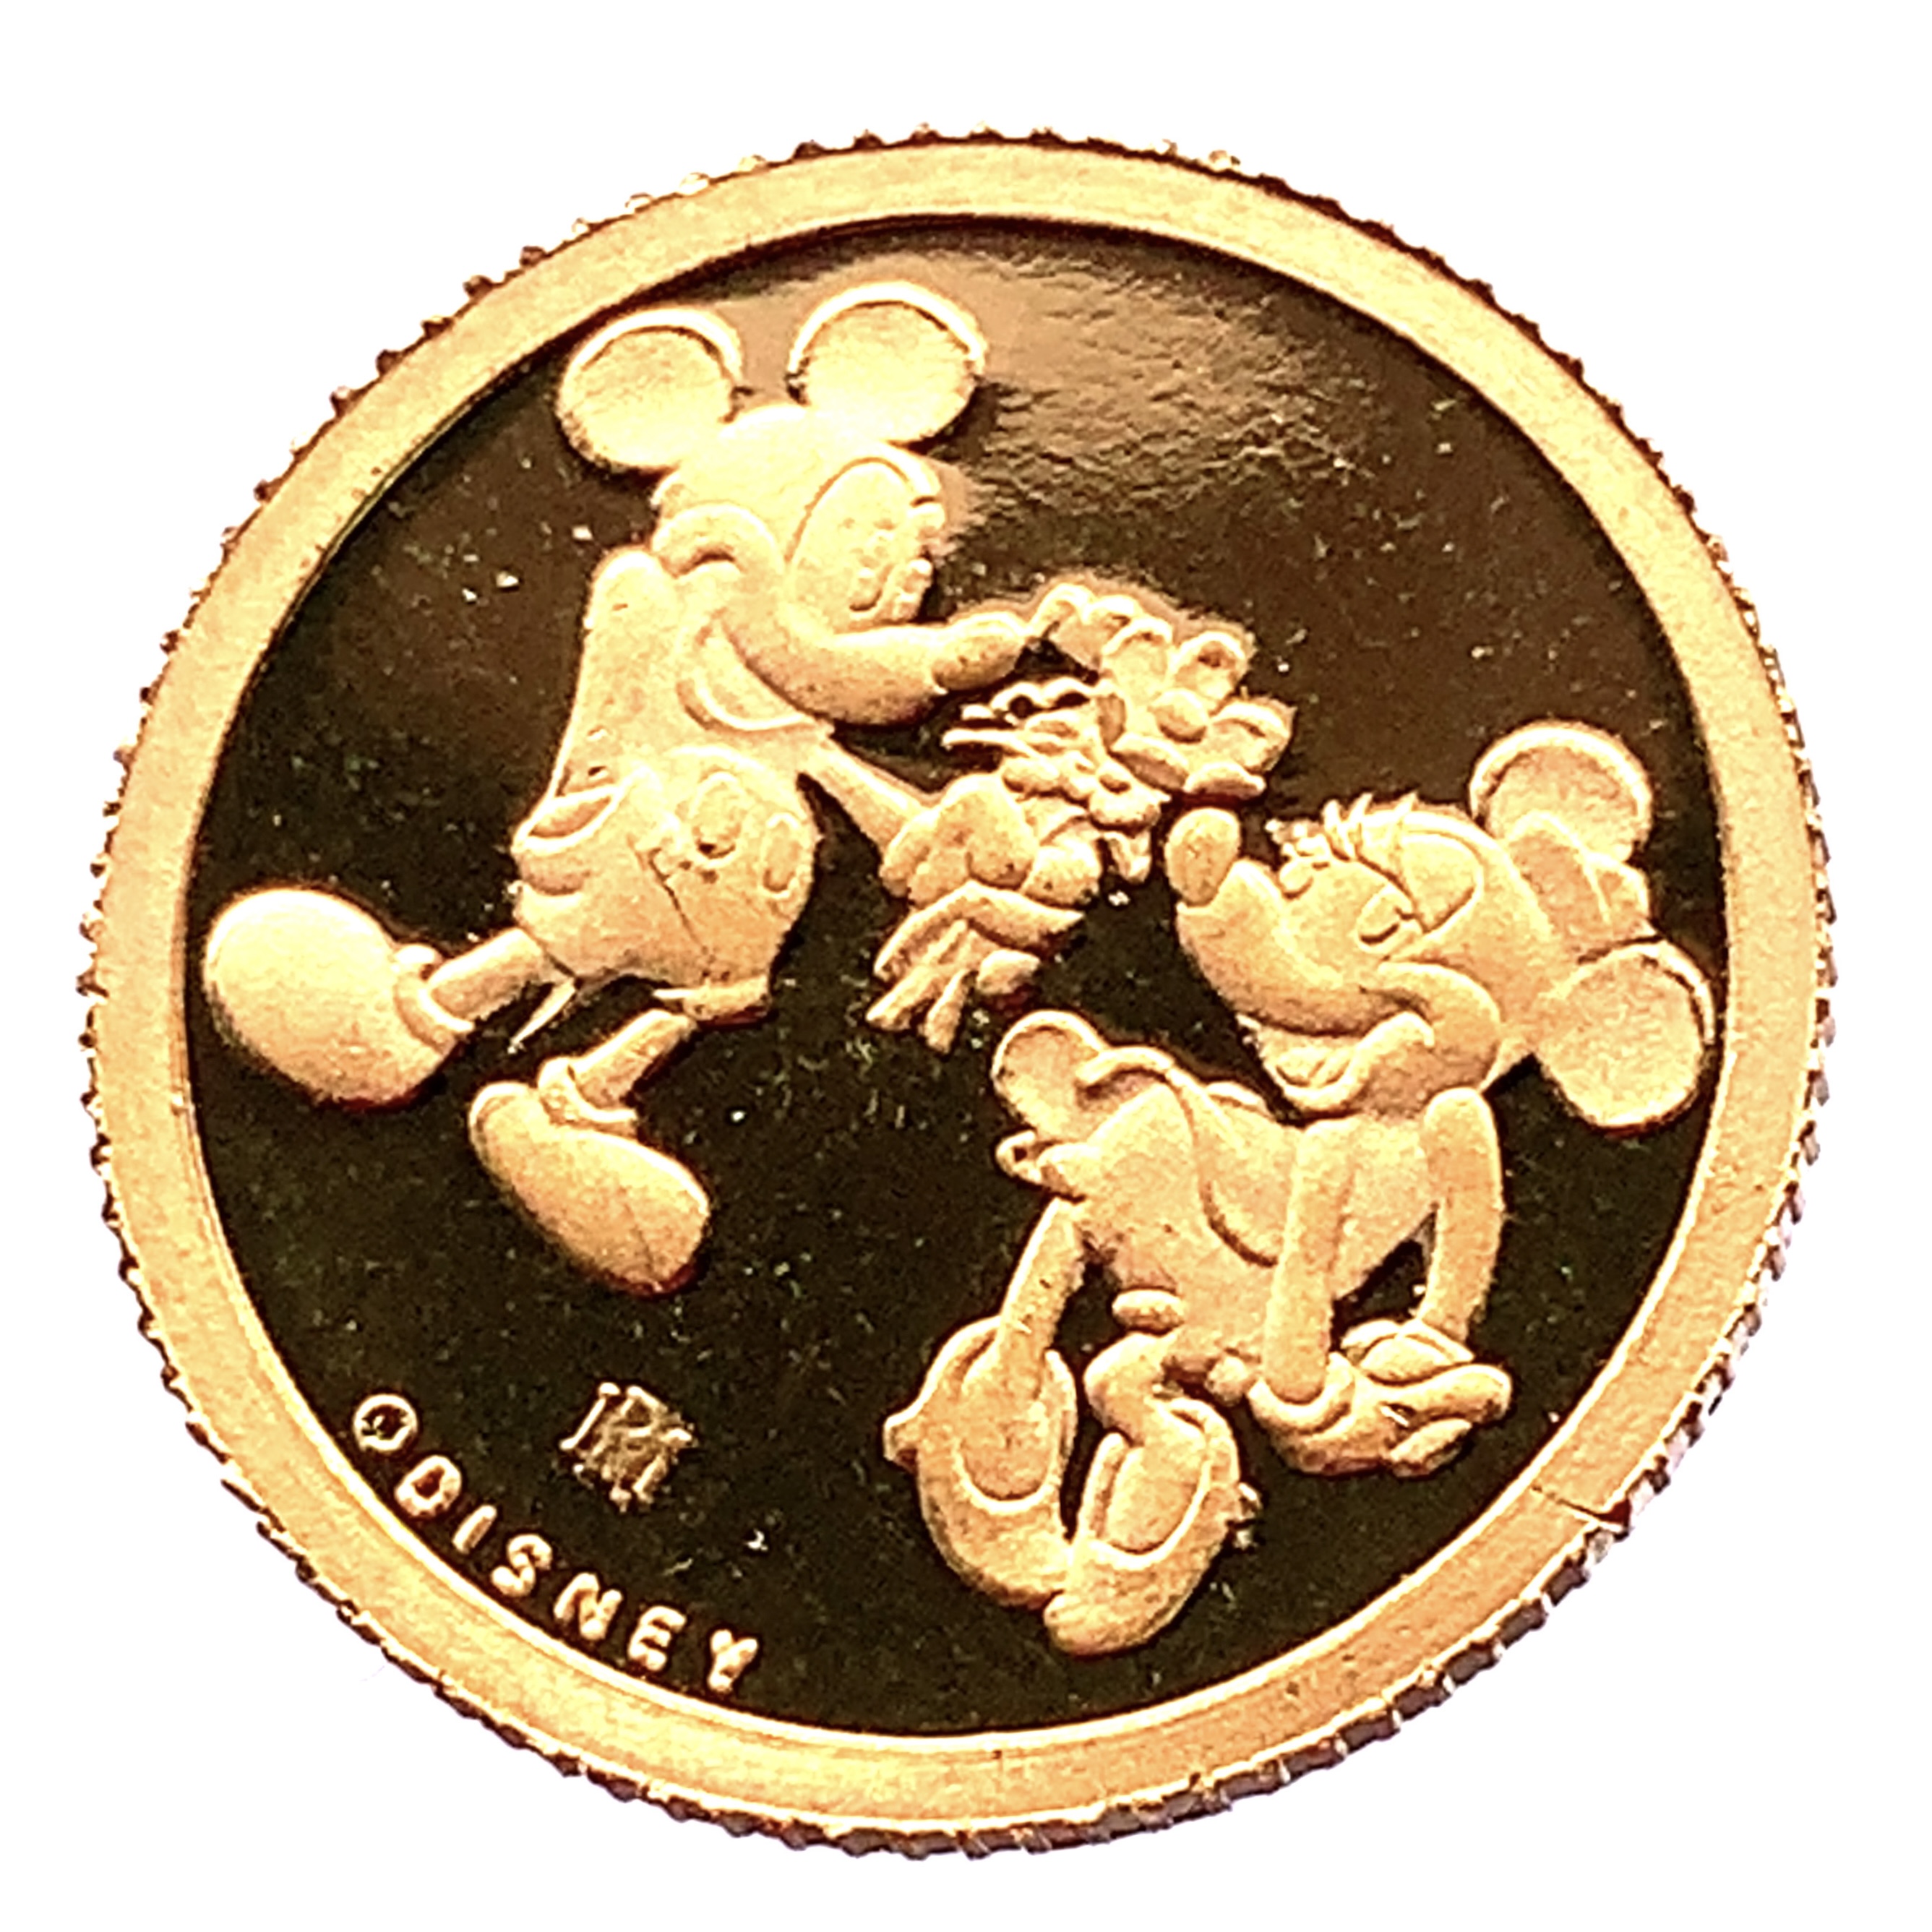 ディズニー金貨 ミッキー 24金 純金 3.1g コイン イエローゴールド コレクション Gold